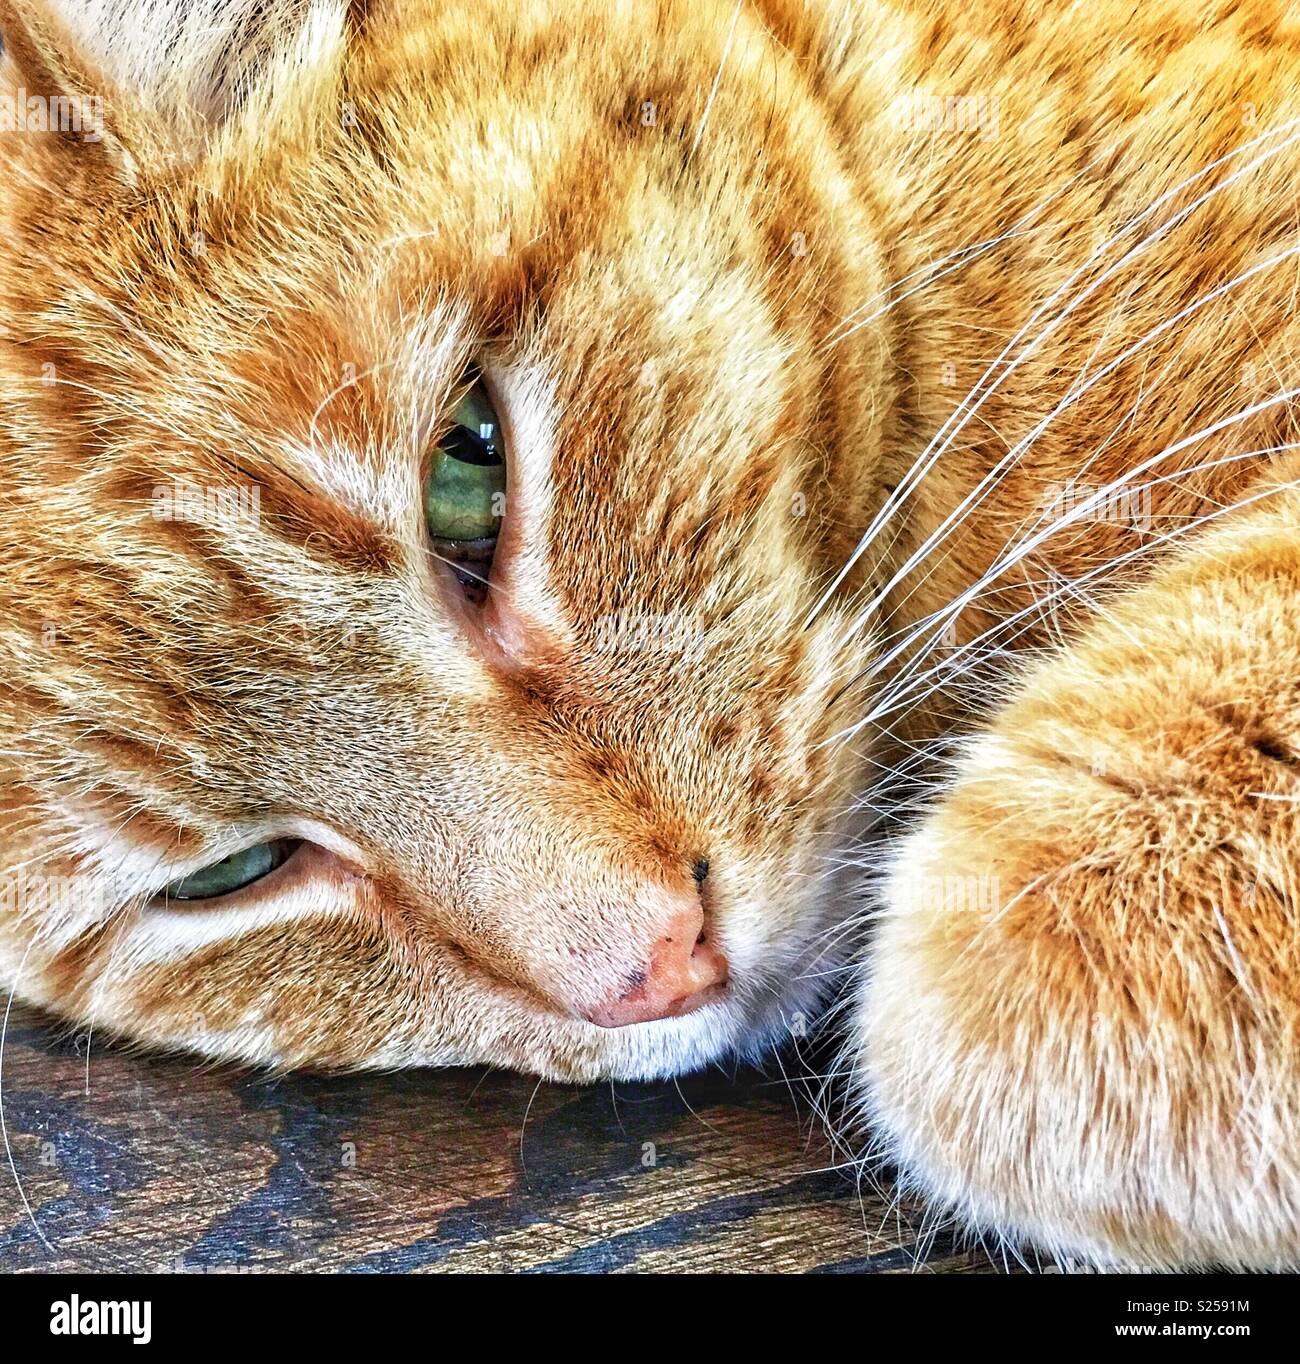 Chat tigré orange avec des yeux verts en train de dormir Banque D'Images